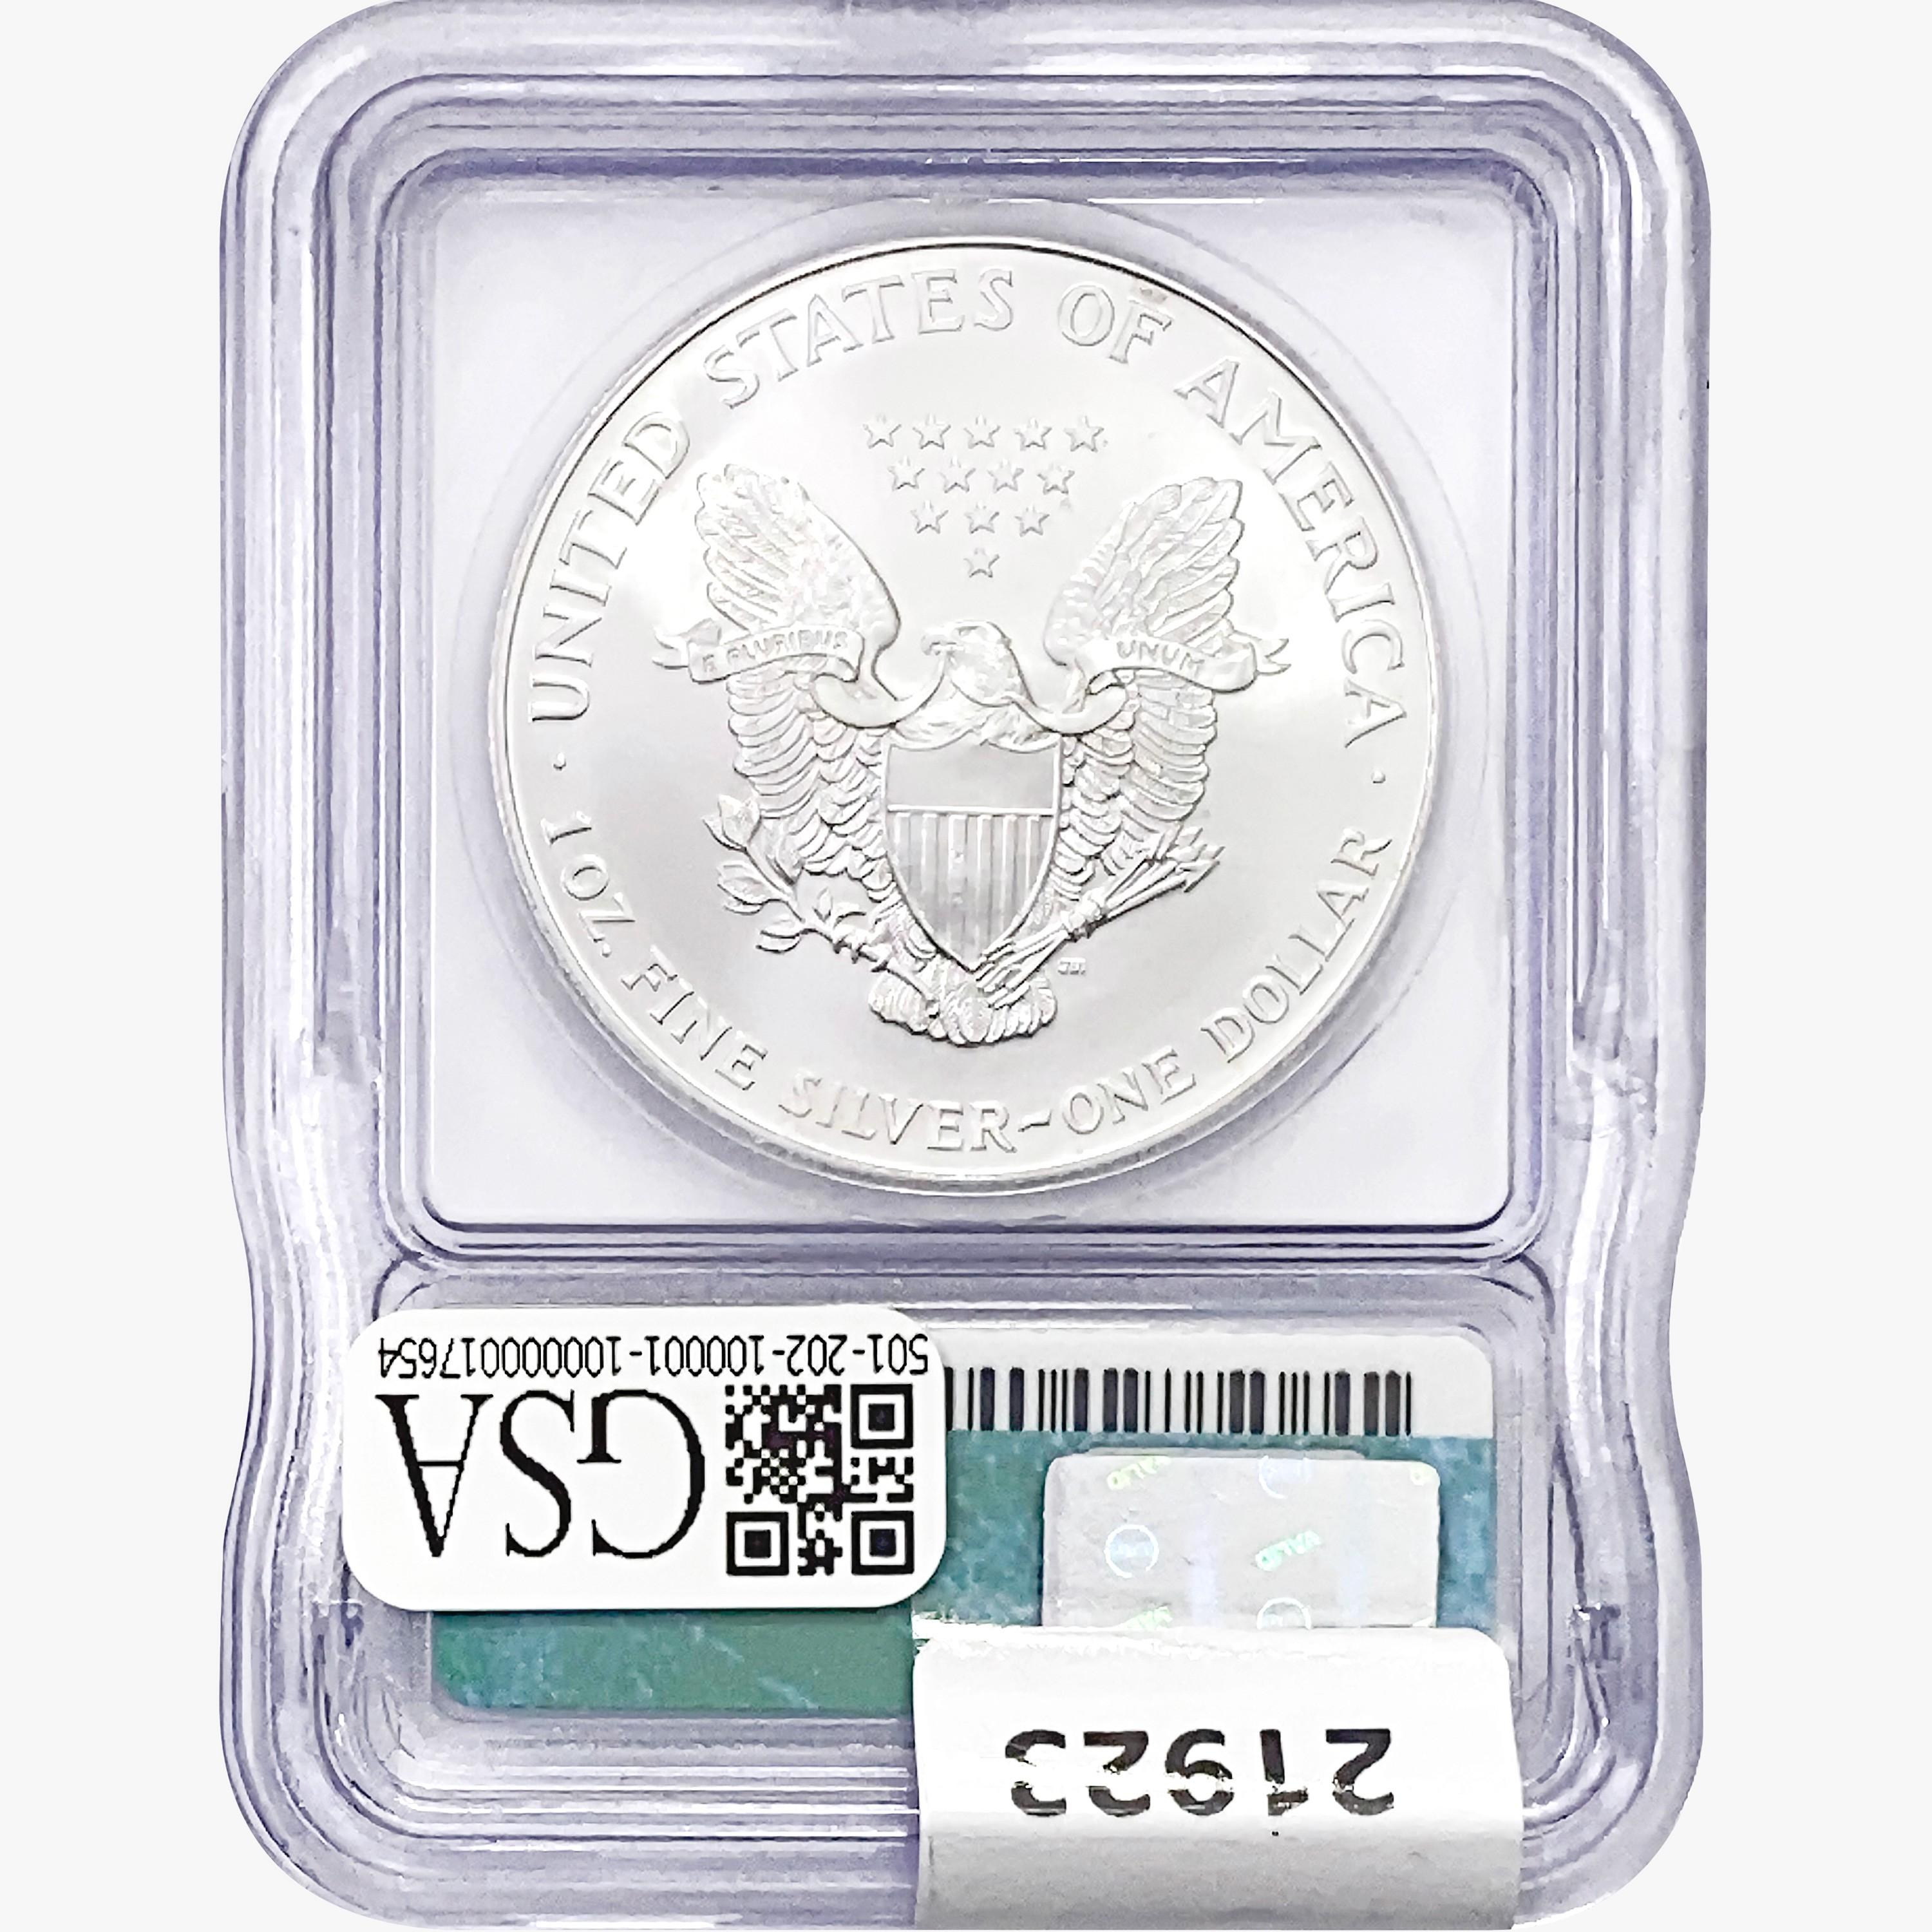 1995 Silver Eagle ICG MS69